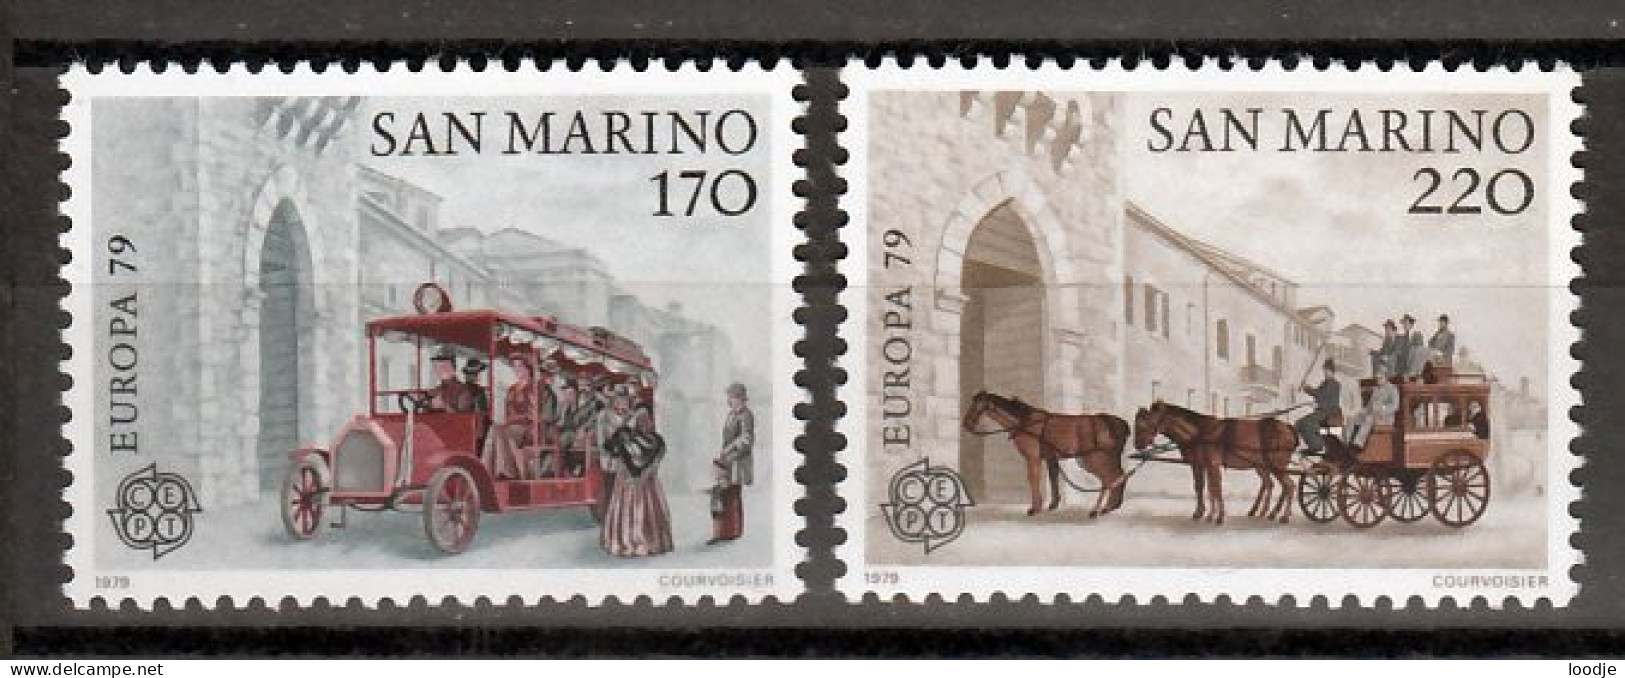 San Marino  Europa Cept 1979 Postfris - 1979